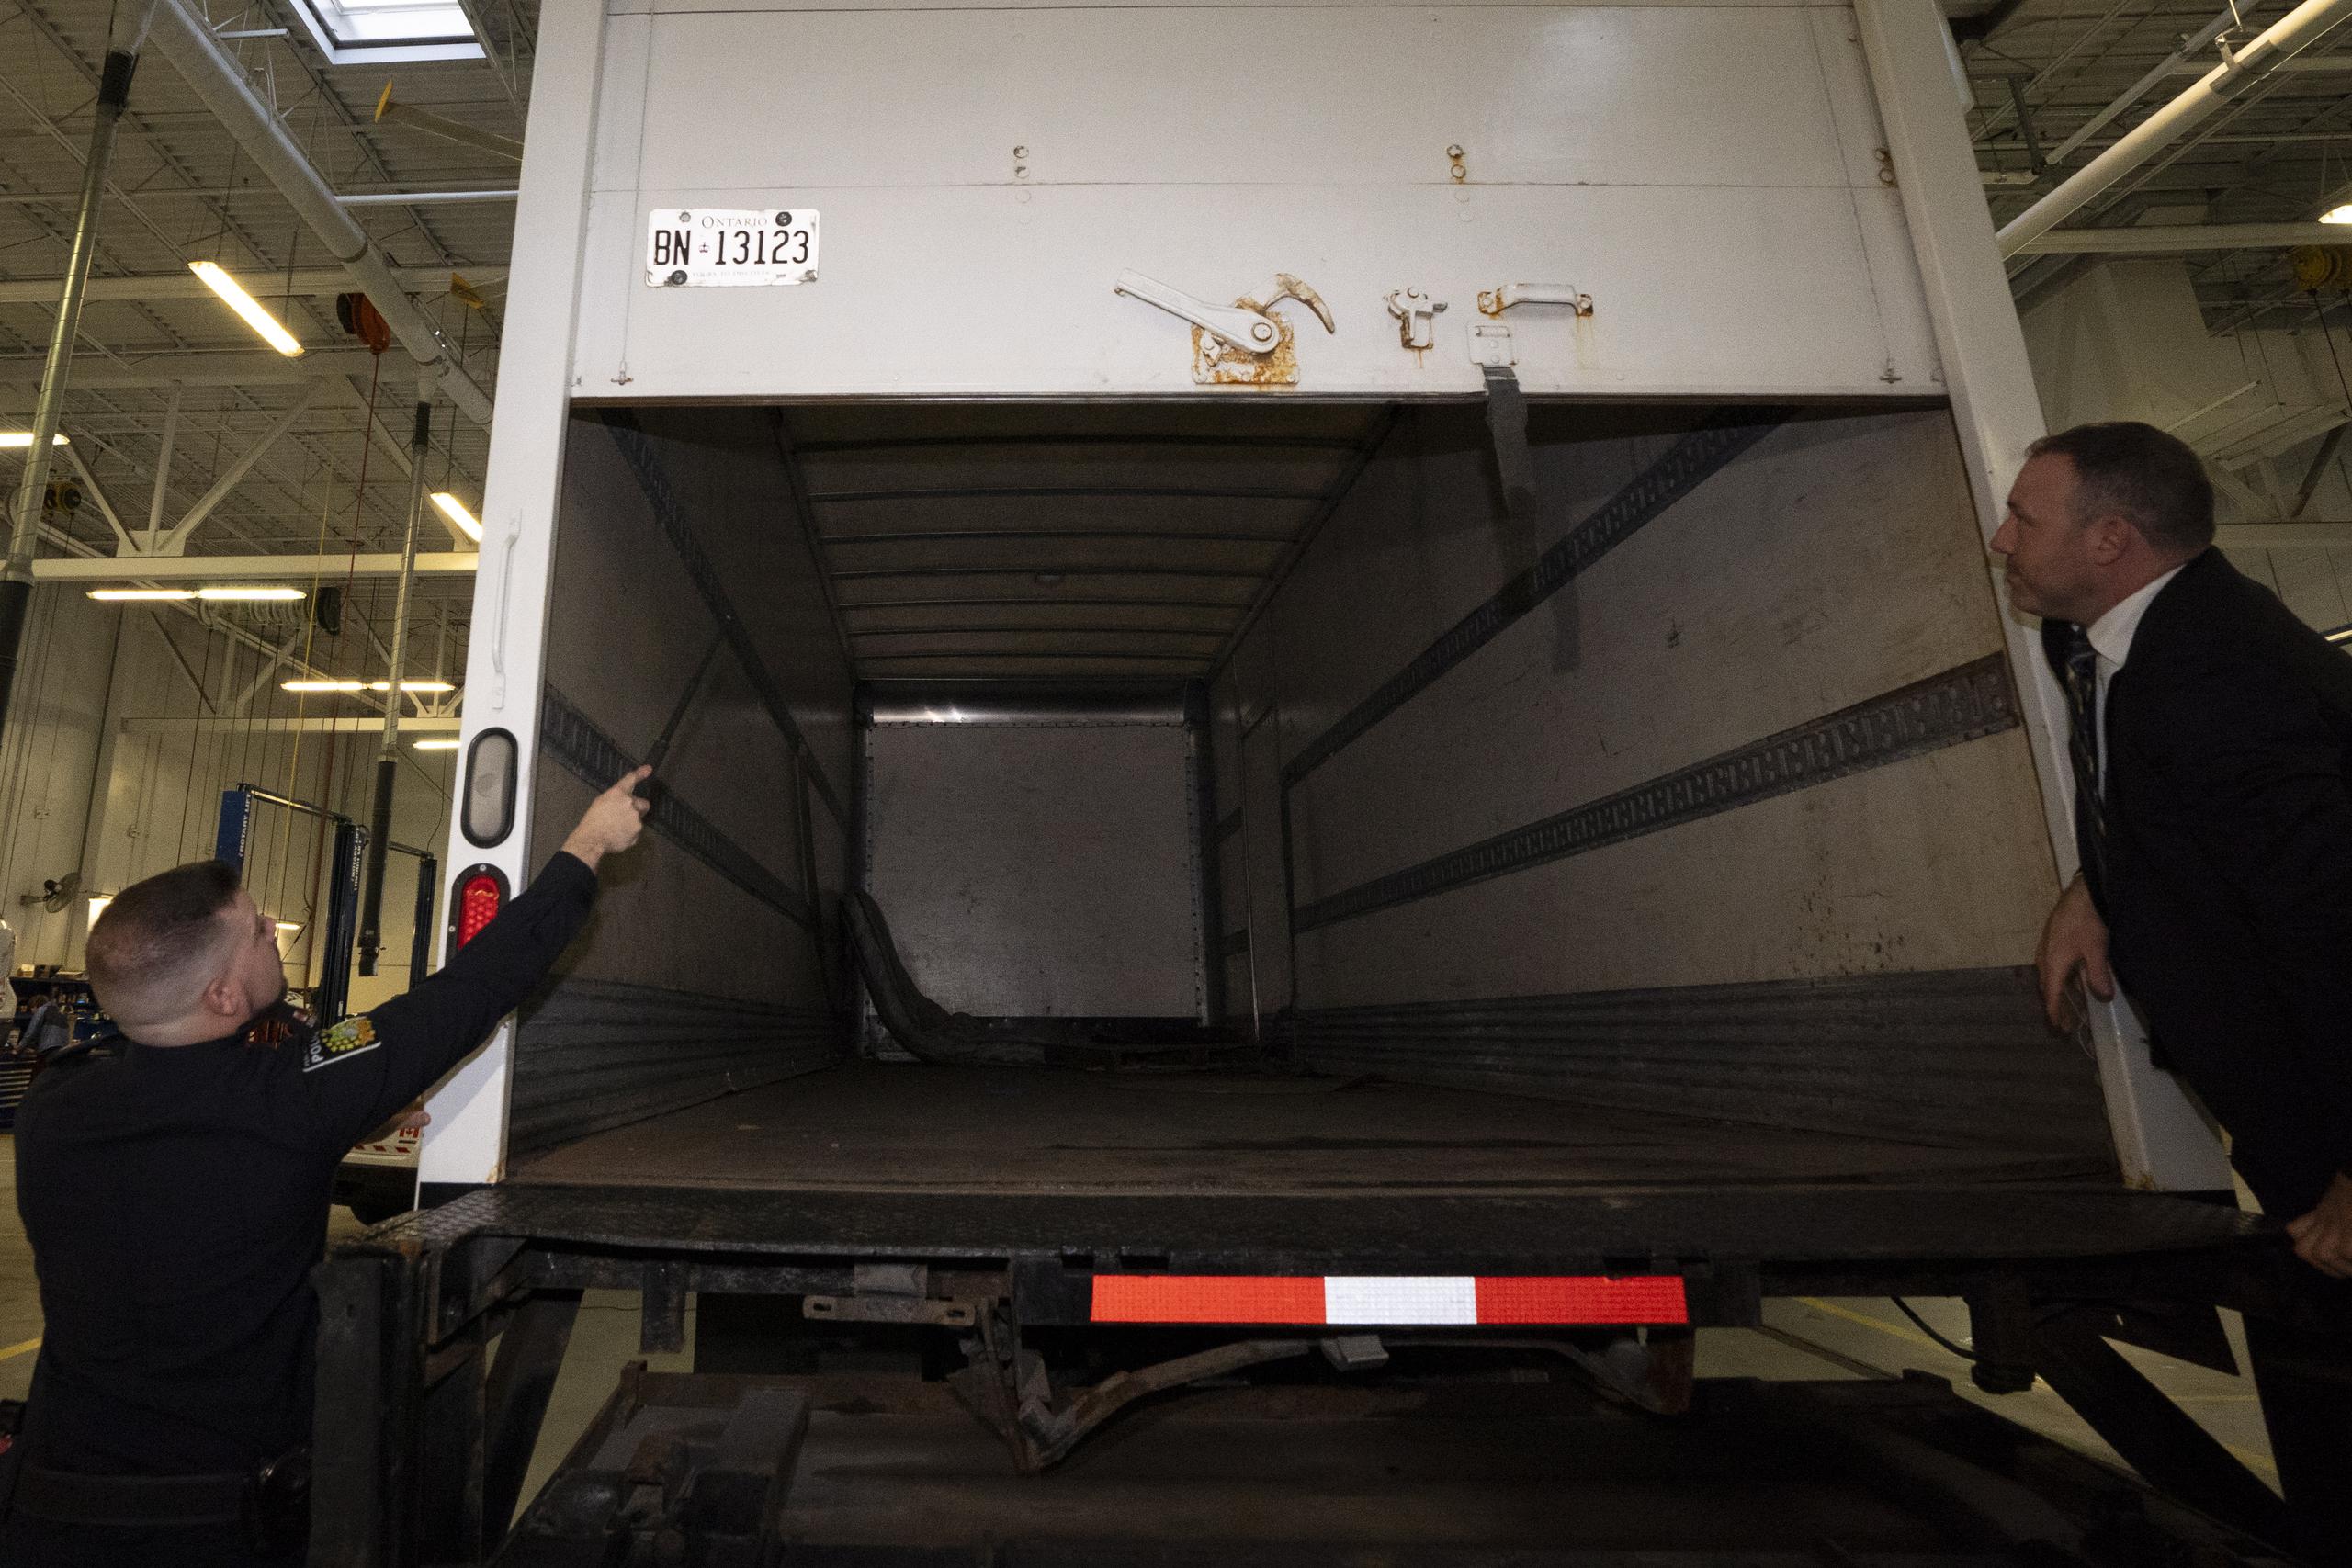 Se alega que utilizando una hoja de ruta falsificada por personal de Air Canada, uno de los individuos logró acceso al almacén, de donde cargó con 24 lingotes de oro en un camión.